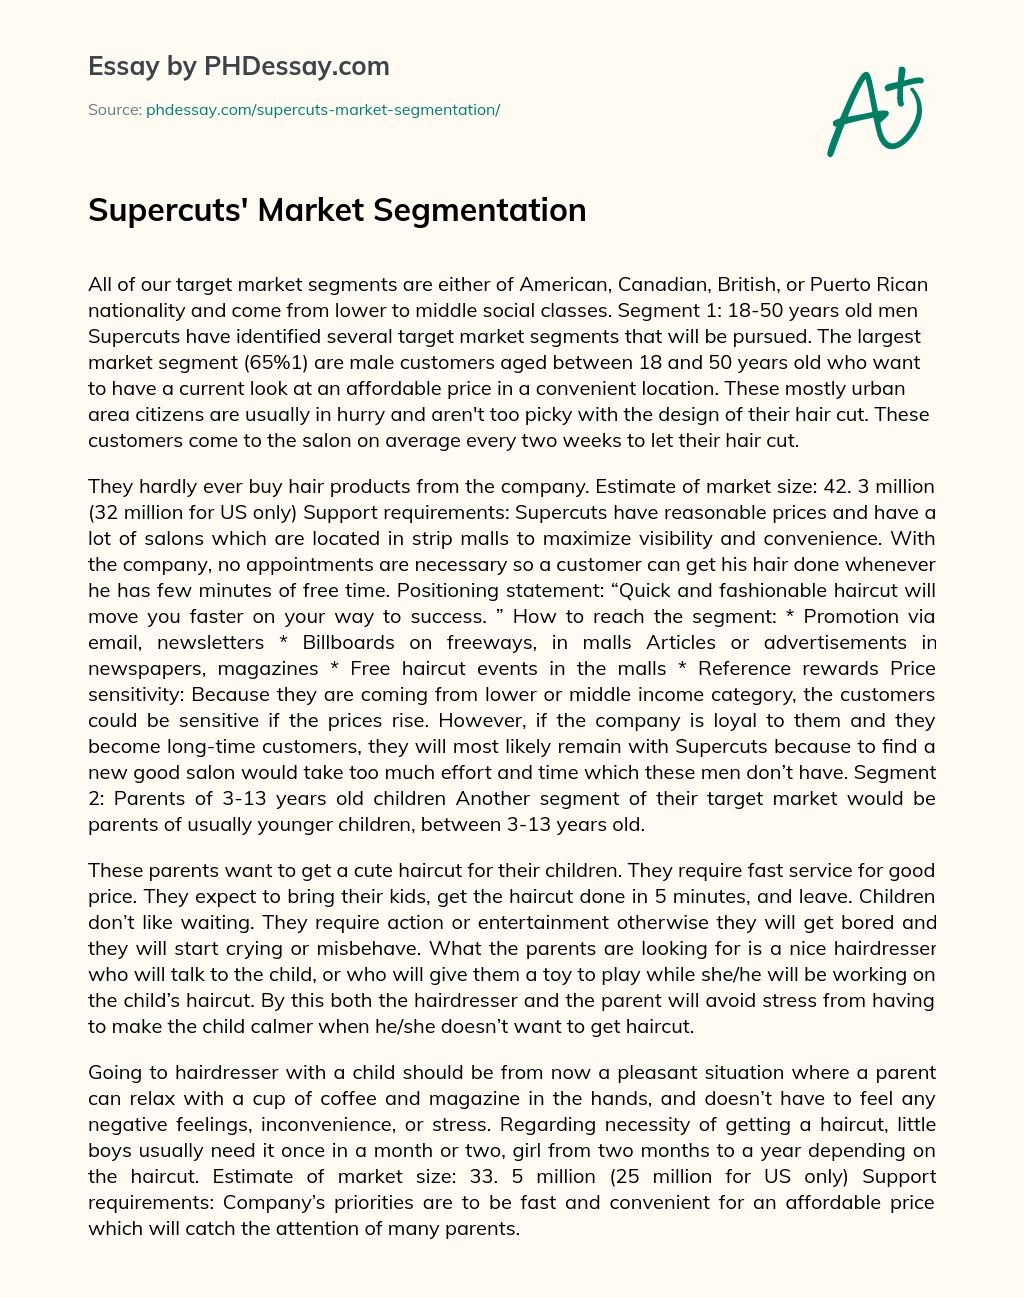 Supercuts’ Market Segmentation essay